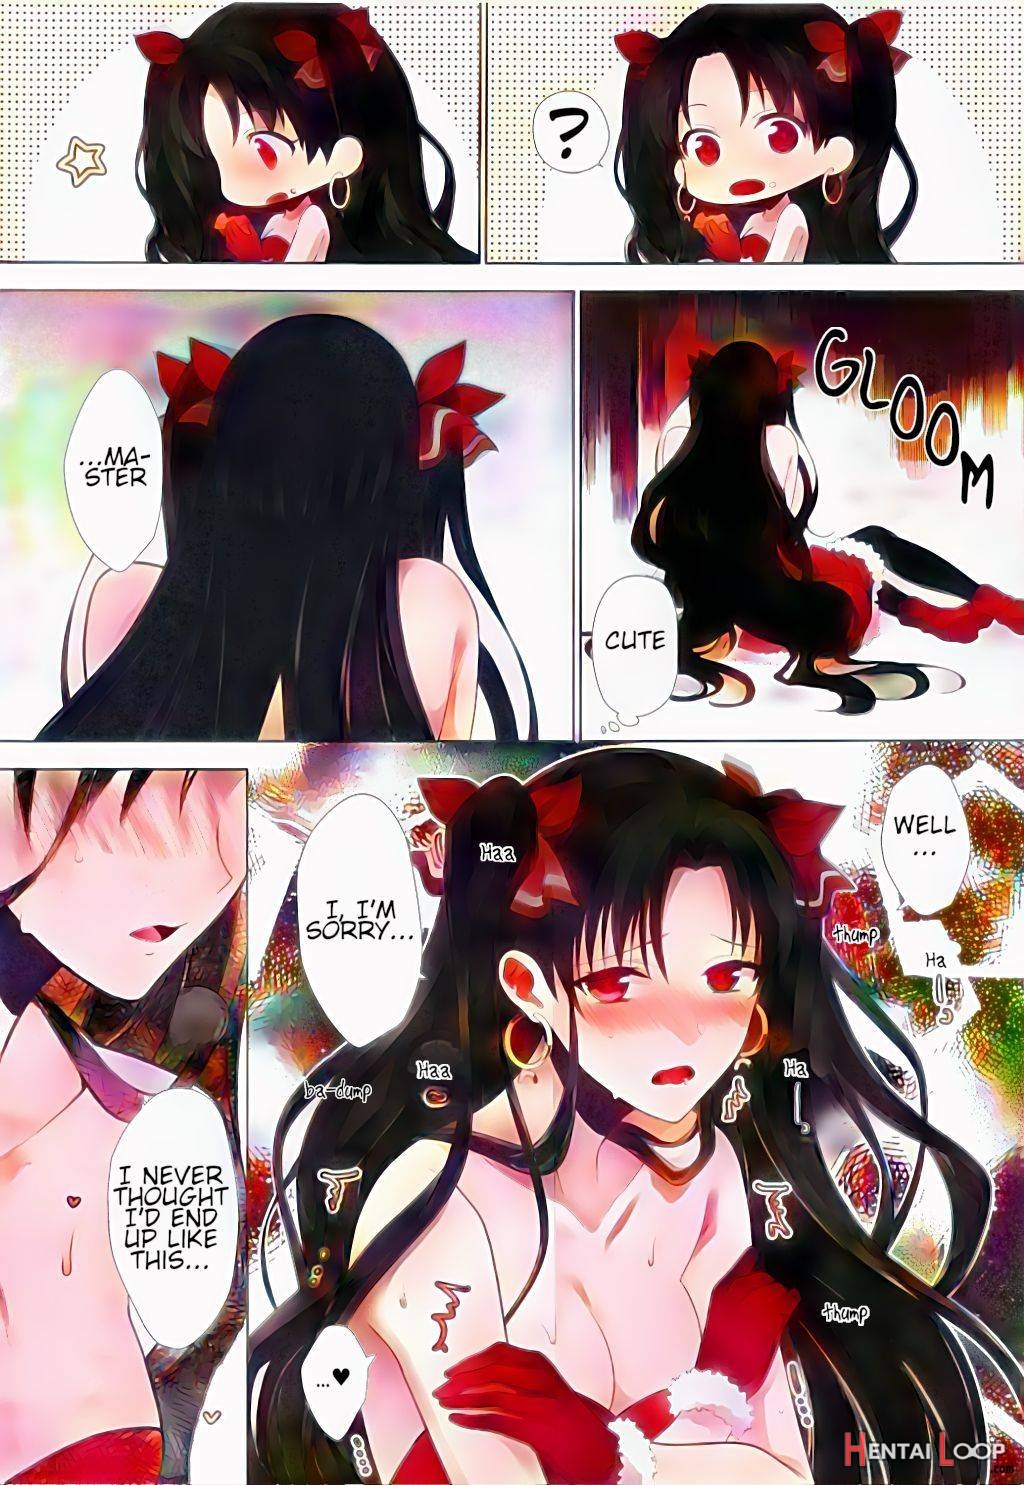 Kimi to Seinaru Yoru ni – Colorized page 12